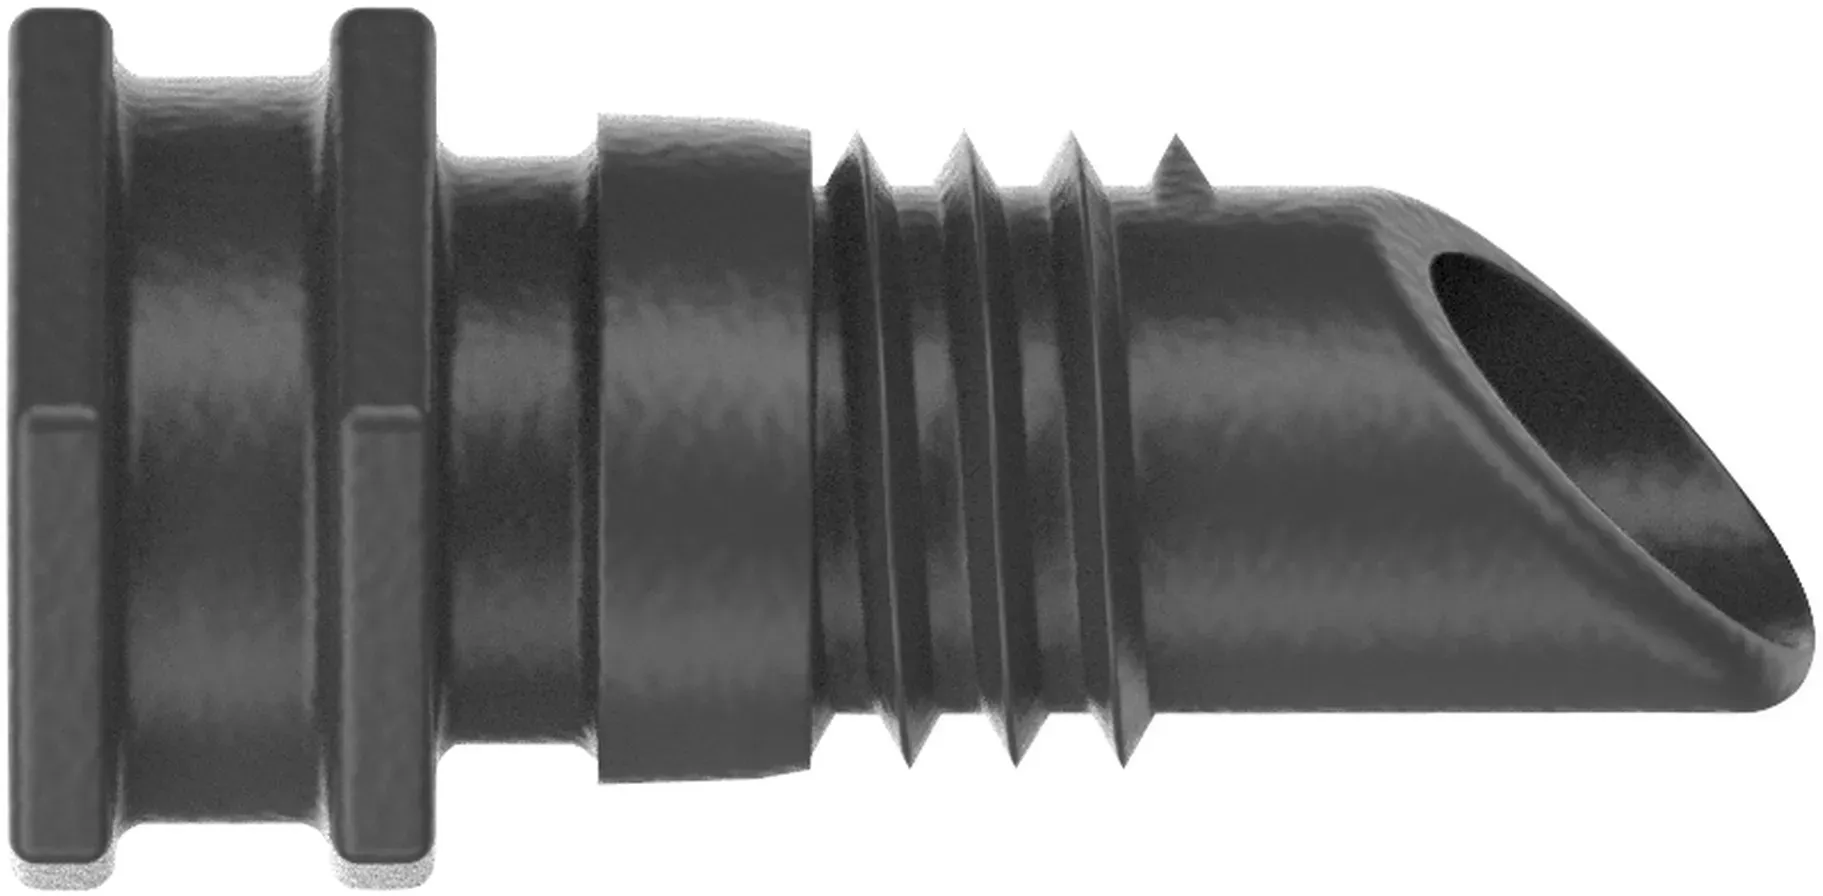 Bild von Micro-Drip-System Verschlussstopfen 4,6 mm 10 St. 13215